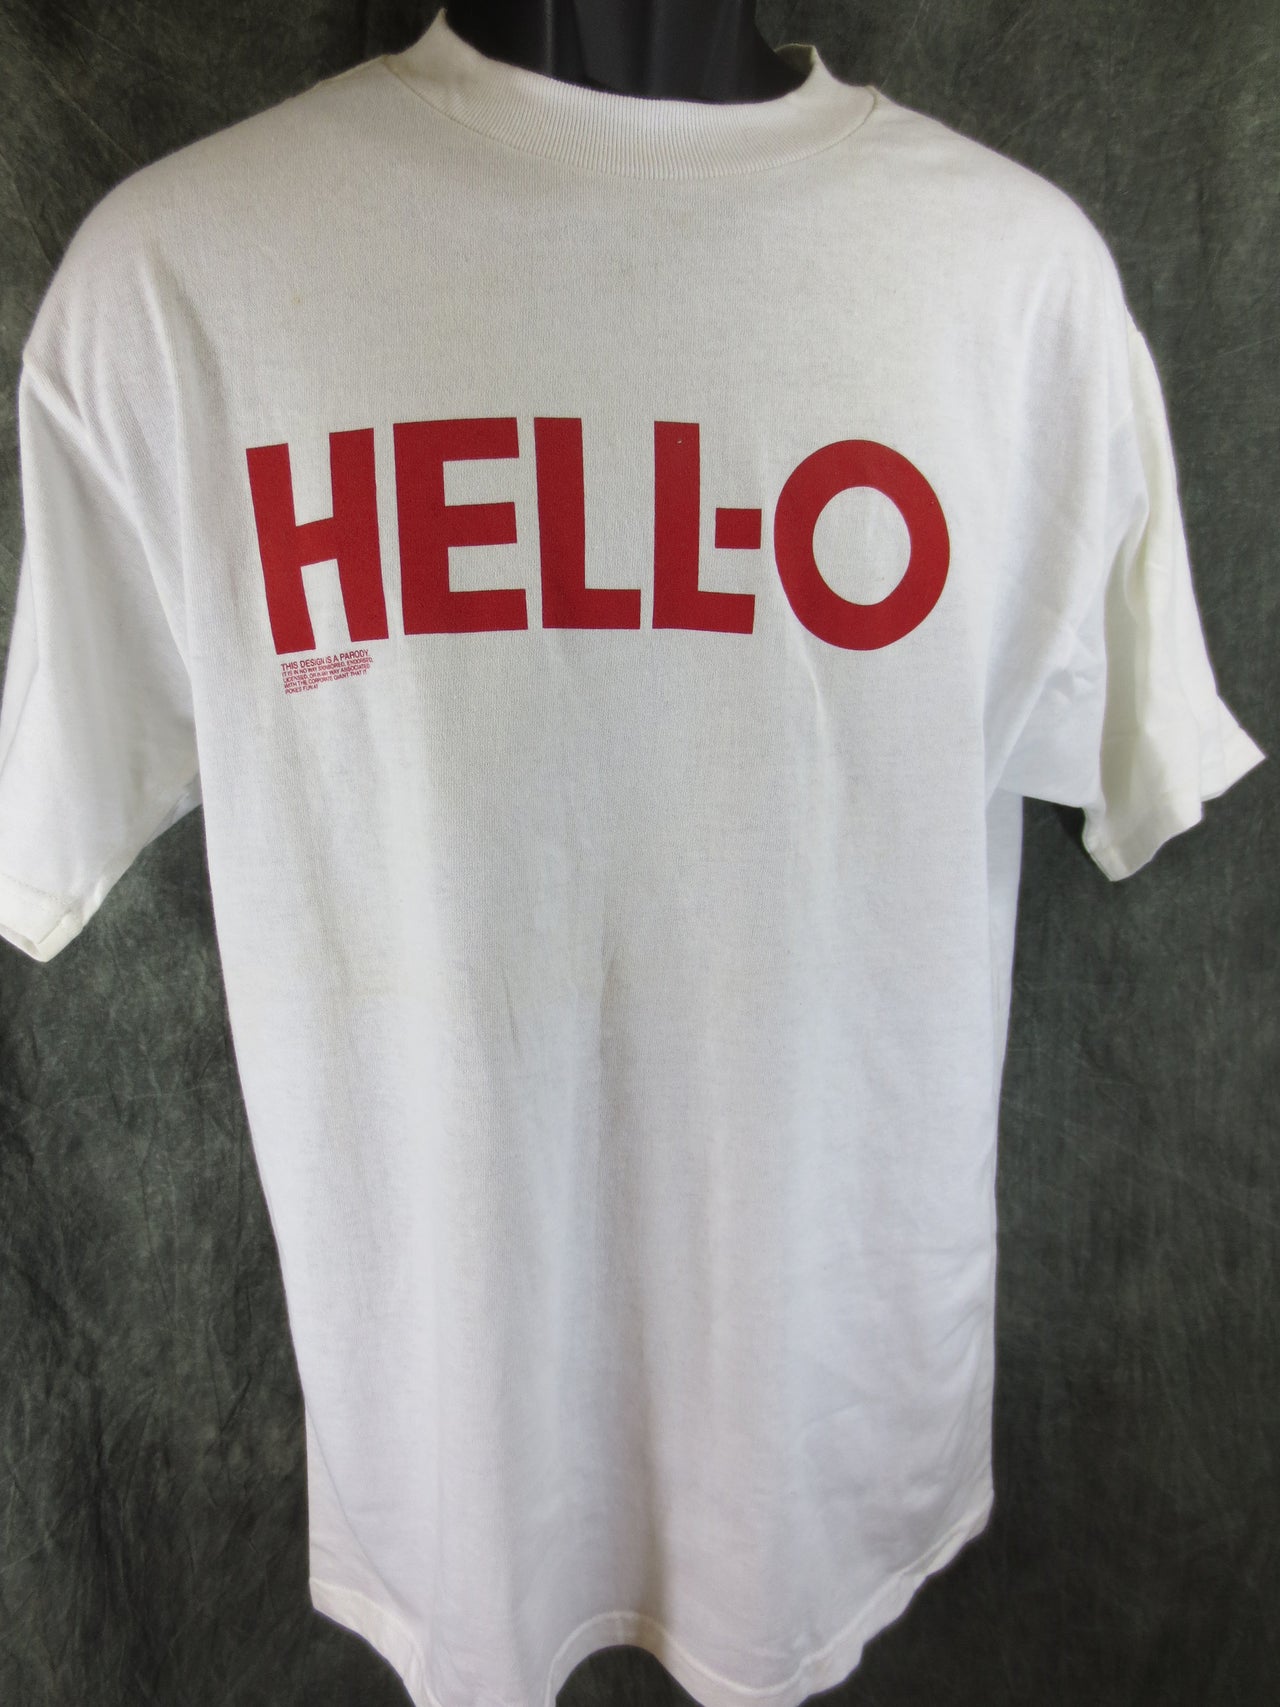 Hell-O Logo Spoof Tshirt Size Large - TshirtNow.net - 4